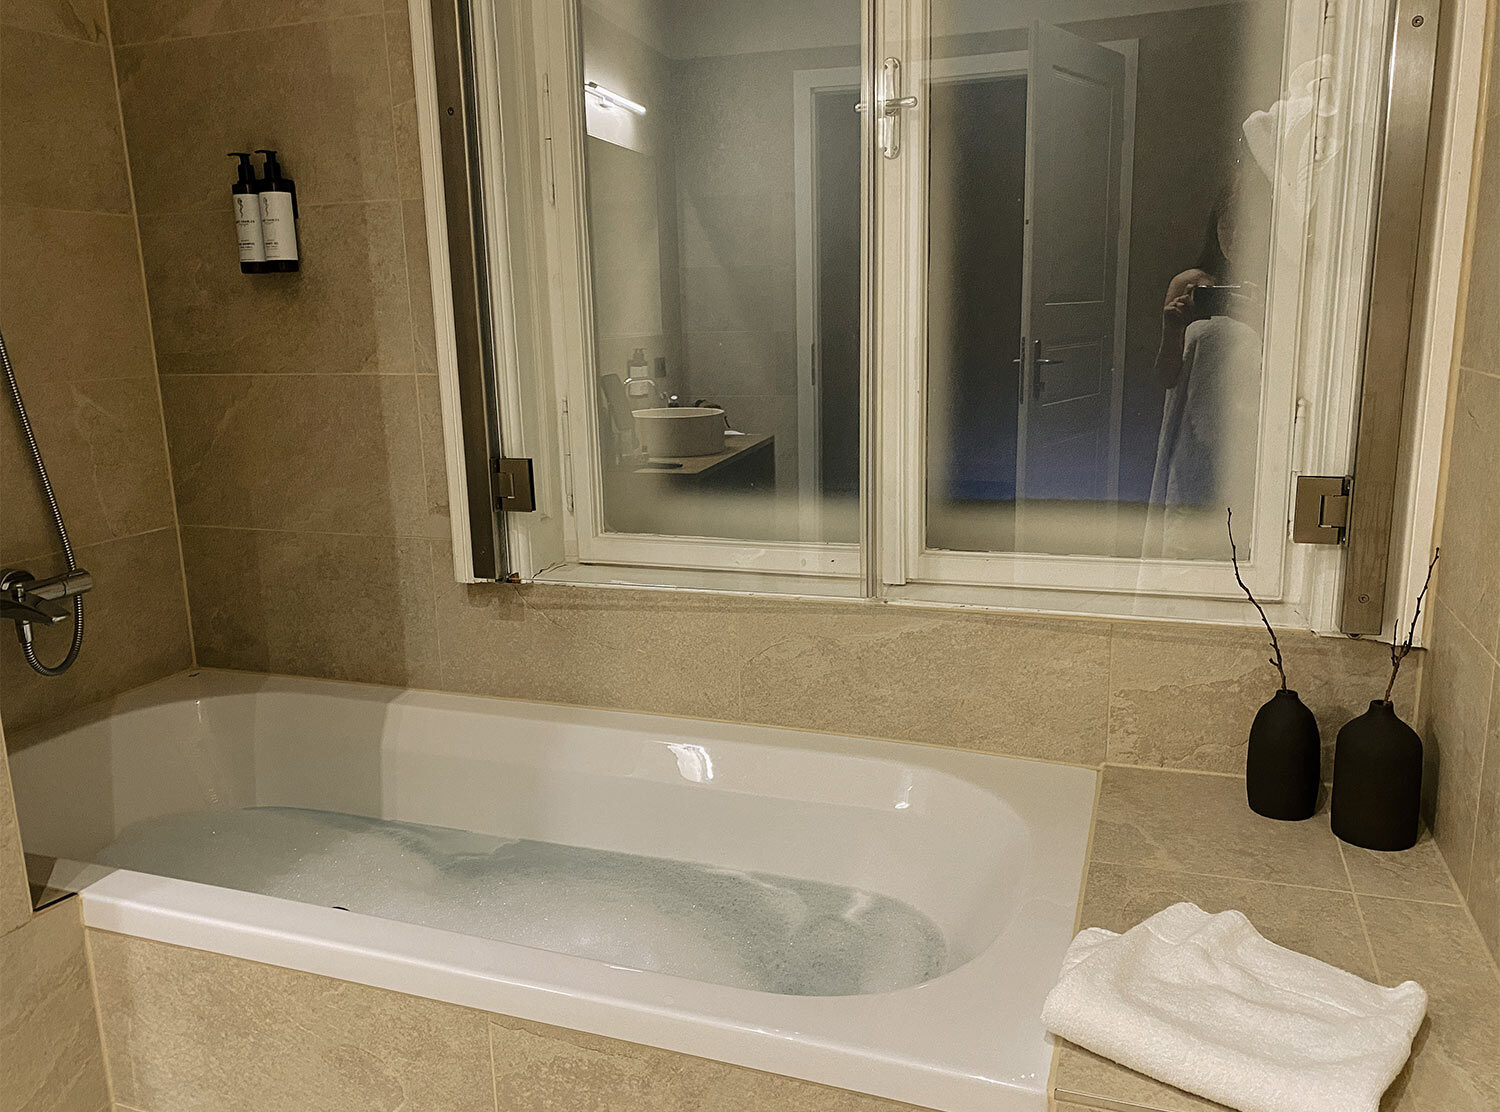 Hotel Zola Bubble baths in November? Yes, please